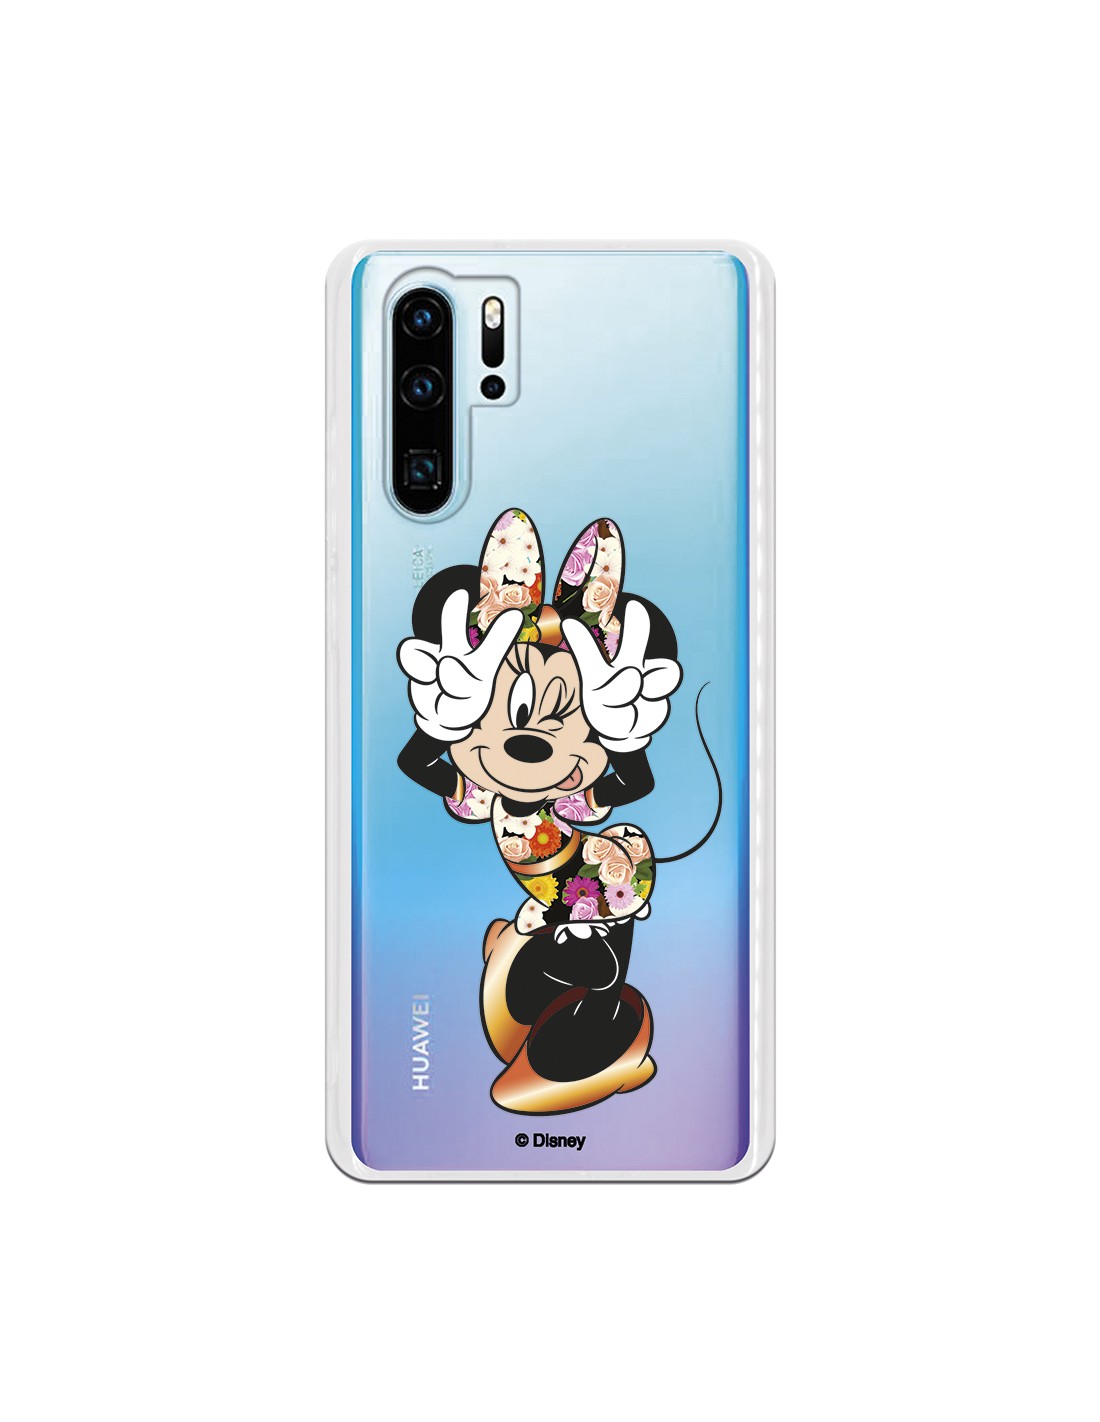 Capa para Huawei P30 Pro Oficial da Disney Minnie a Posar - Clássicos Disney